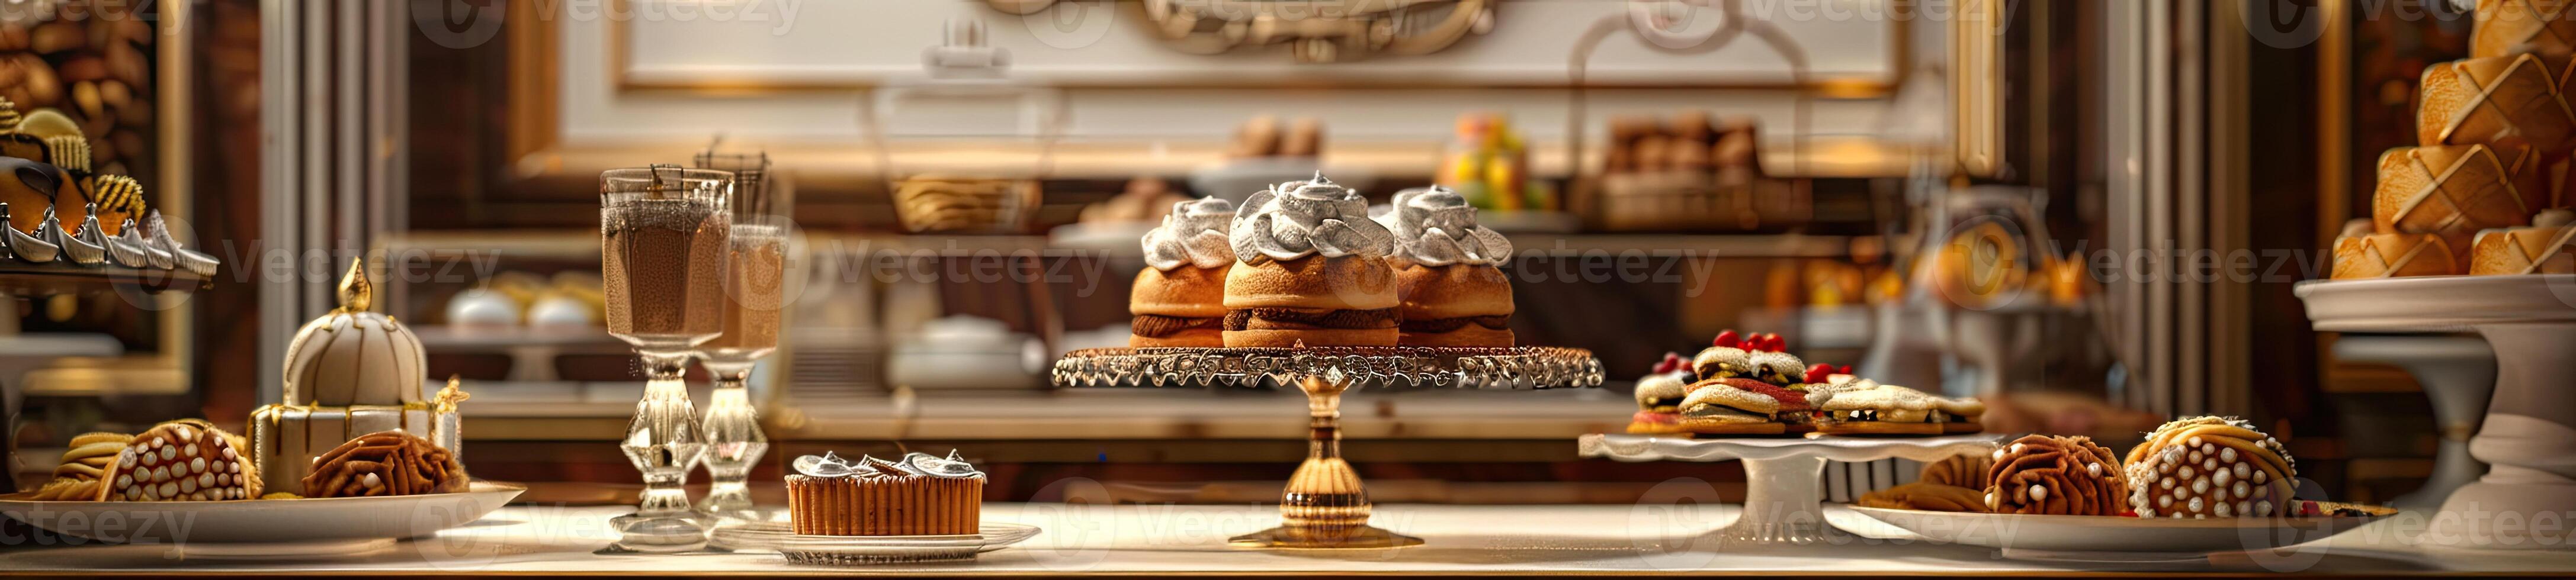 Luxury Bakery on Elegant Dining Table photo